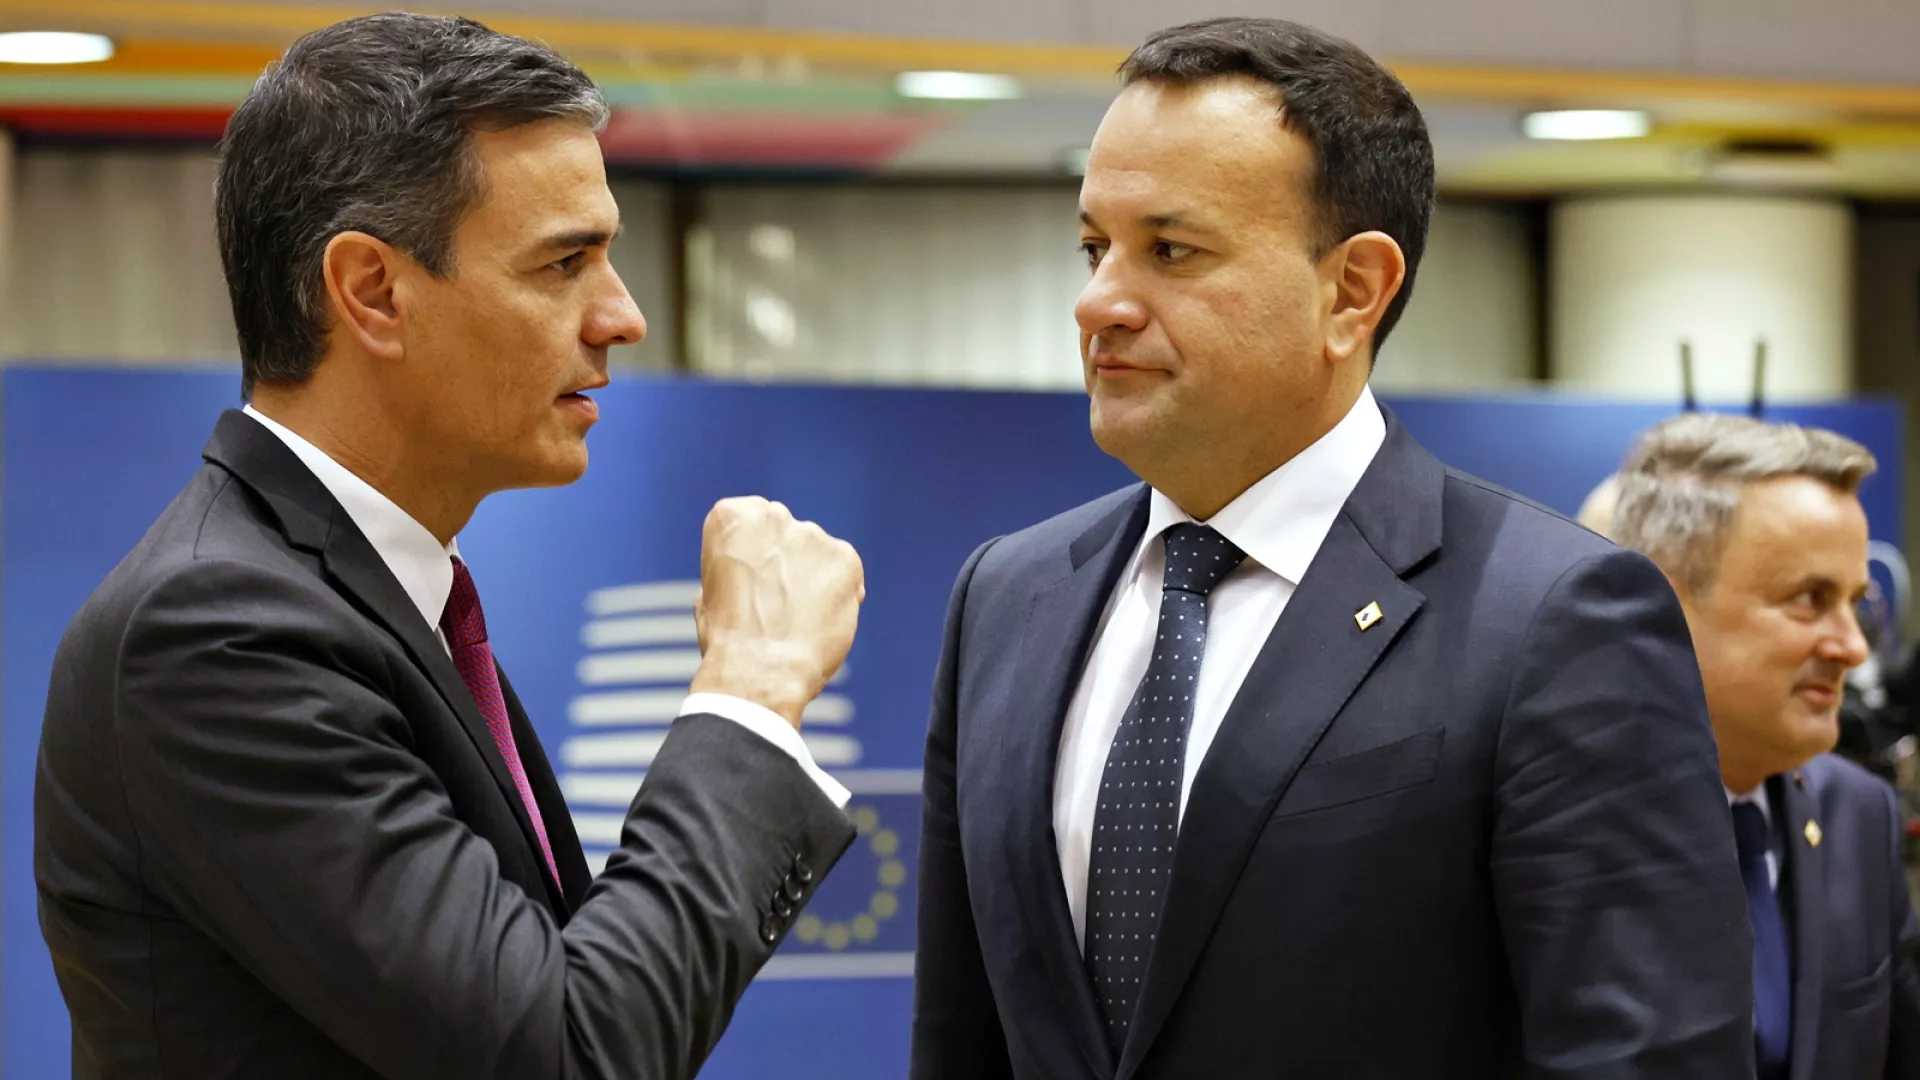 Lufta në Gaza/ Spanja dhe Irlanda bëjnë thirrje për 'rishikim urgjent' të marrëveshjes BE-Izrael